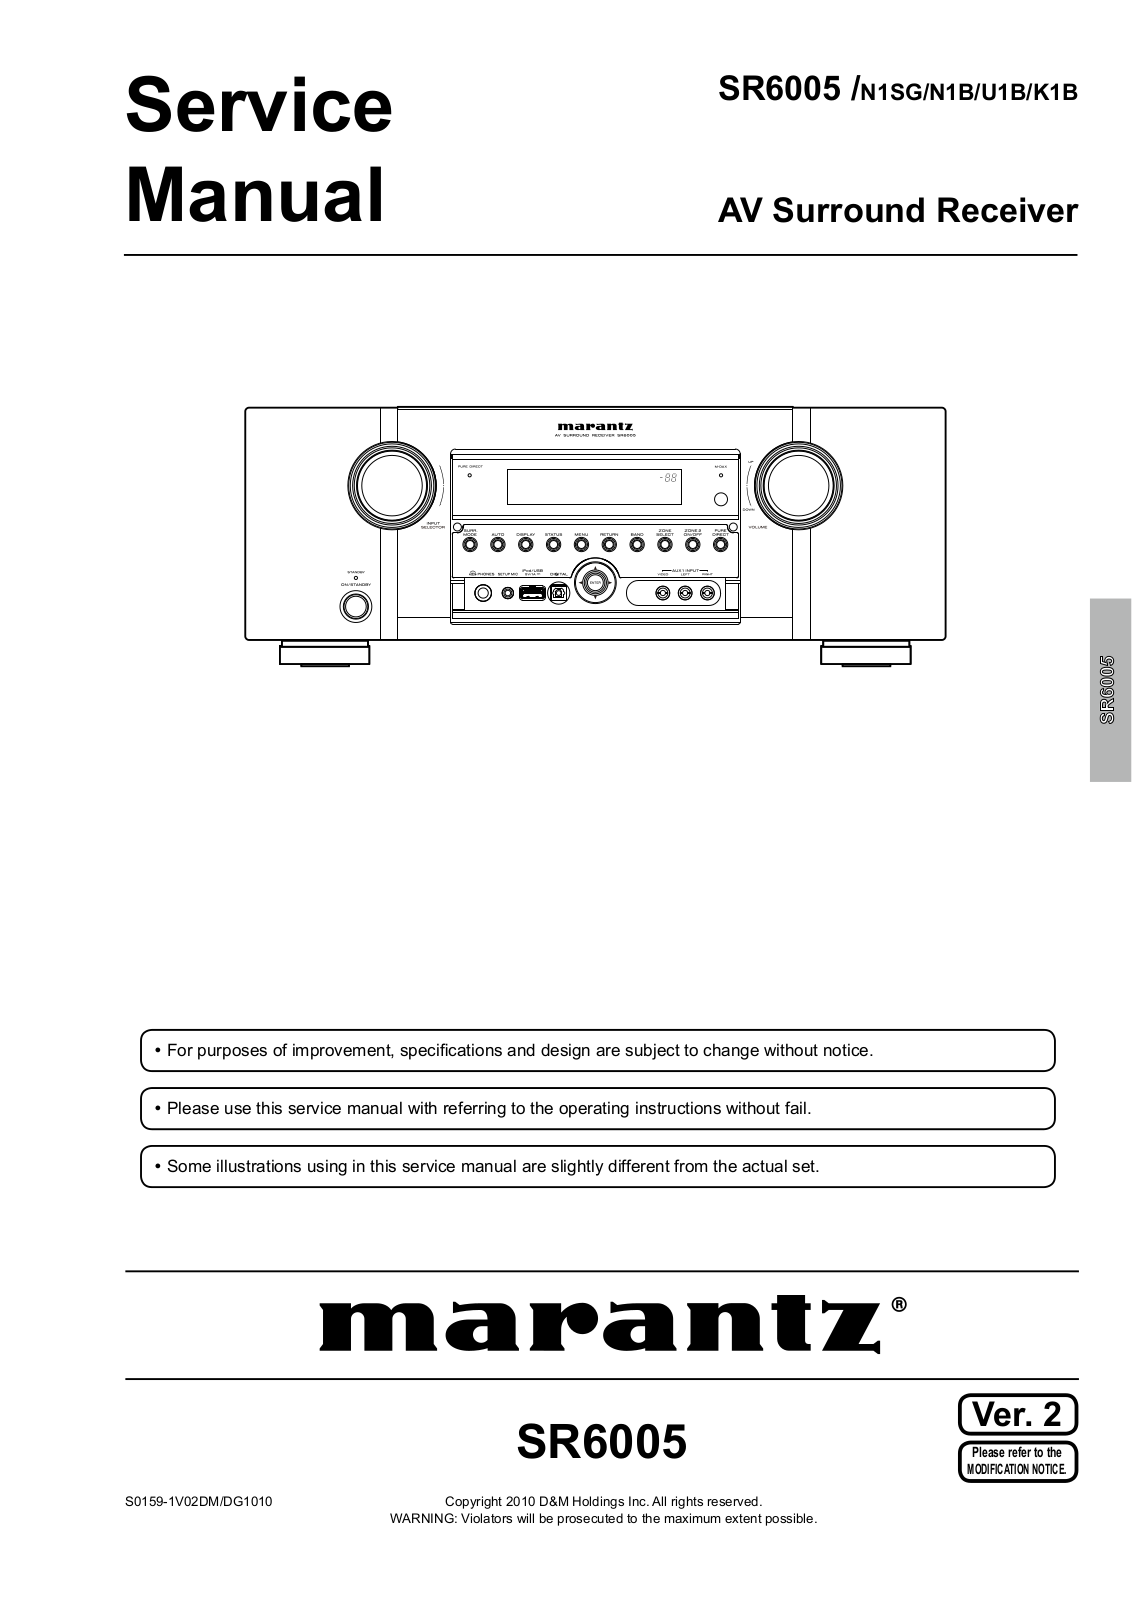 Marantz SR-6005 Service Manual